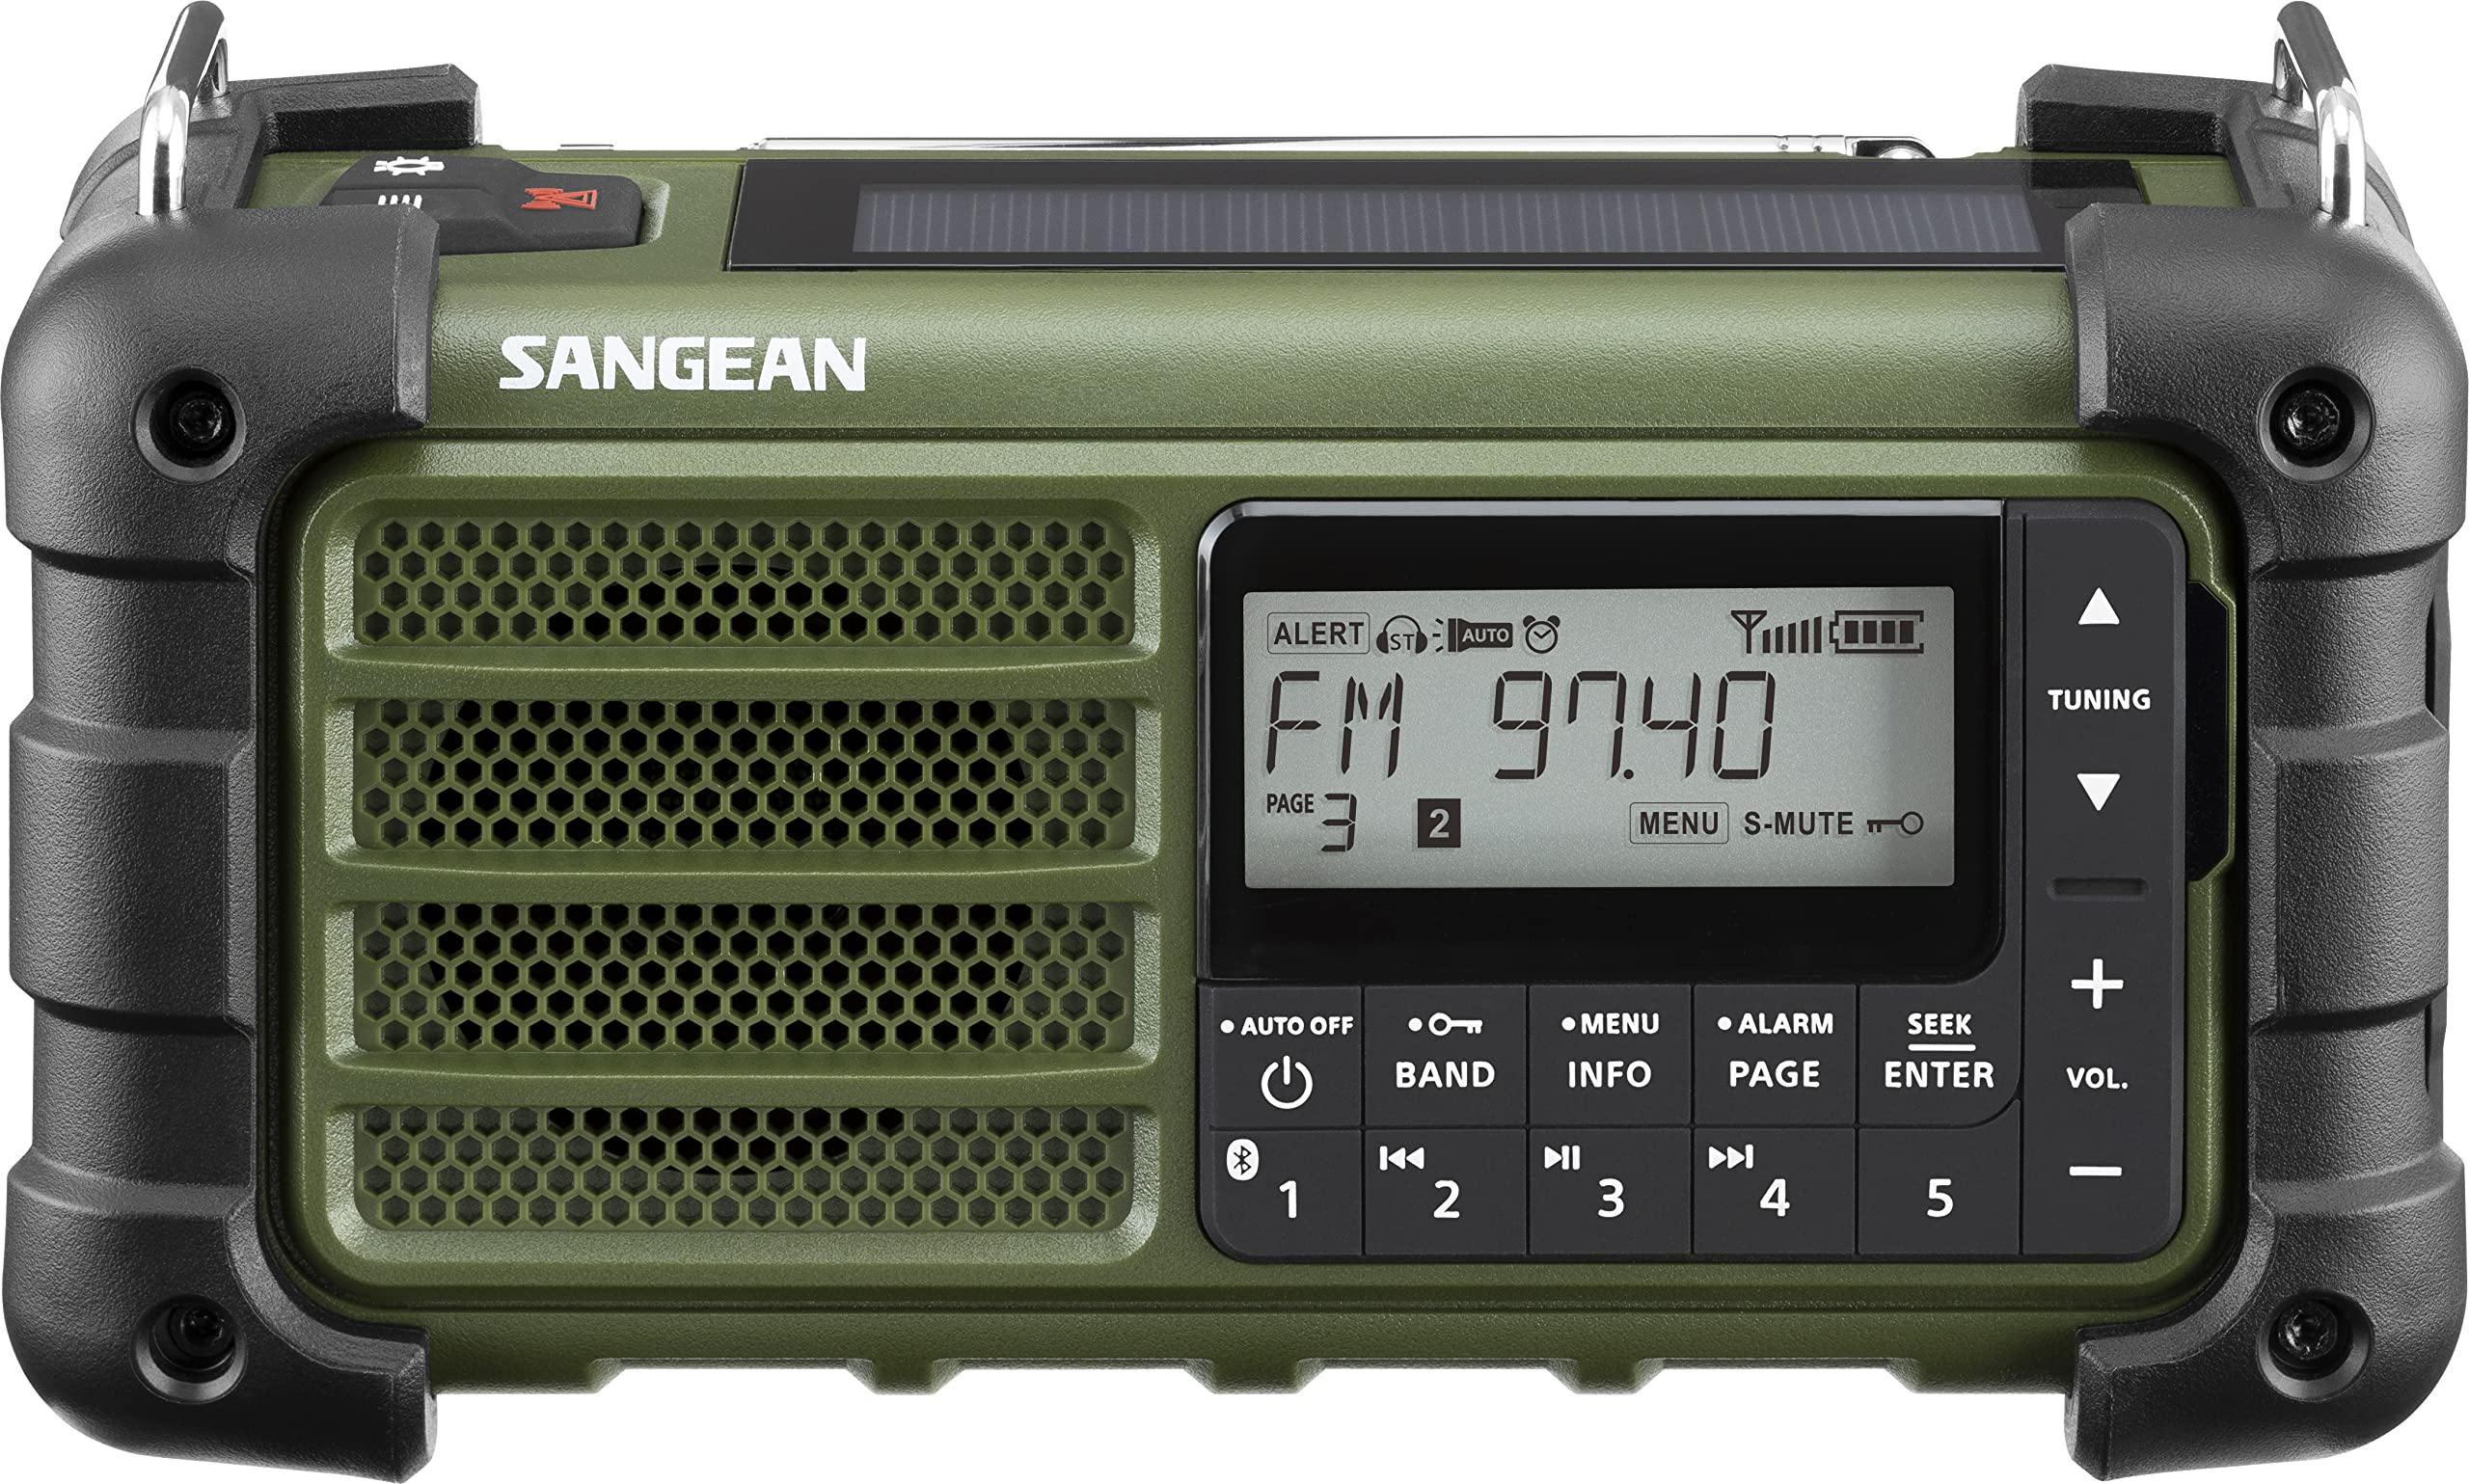 SANGEAN MMR-99 WEATHER RADIO WITH AM/FM-RBDS